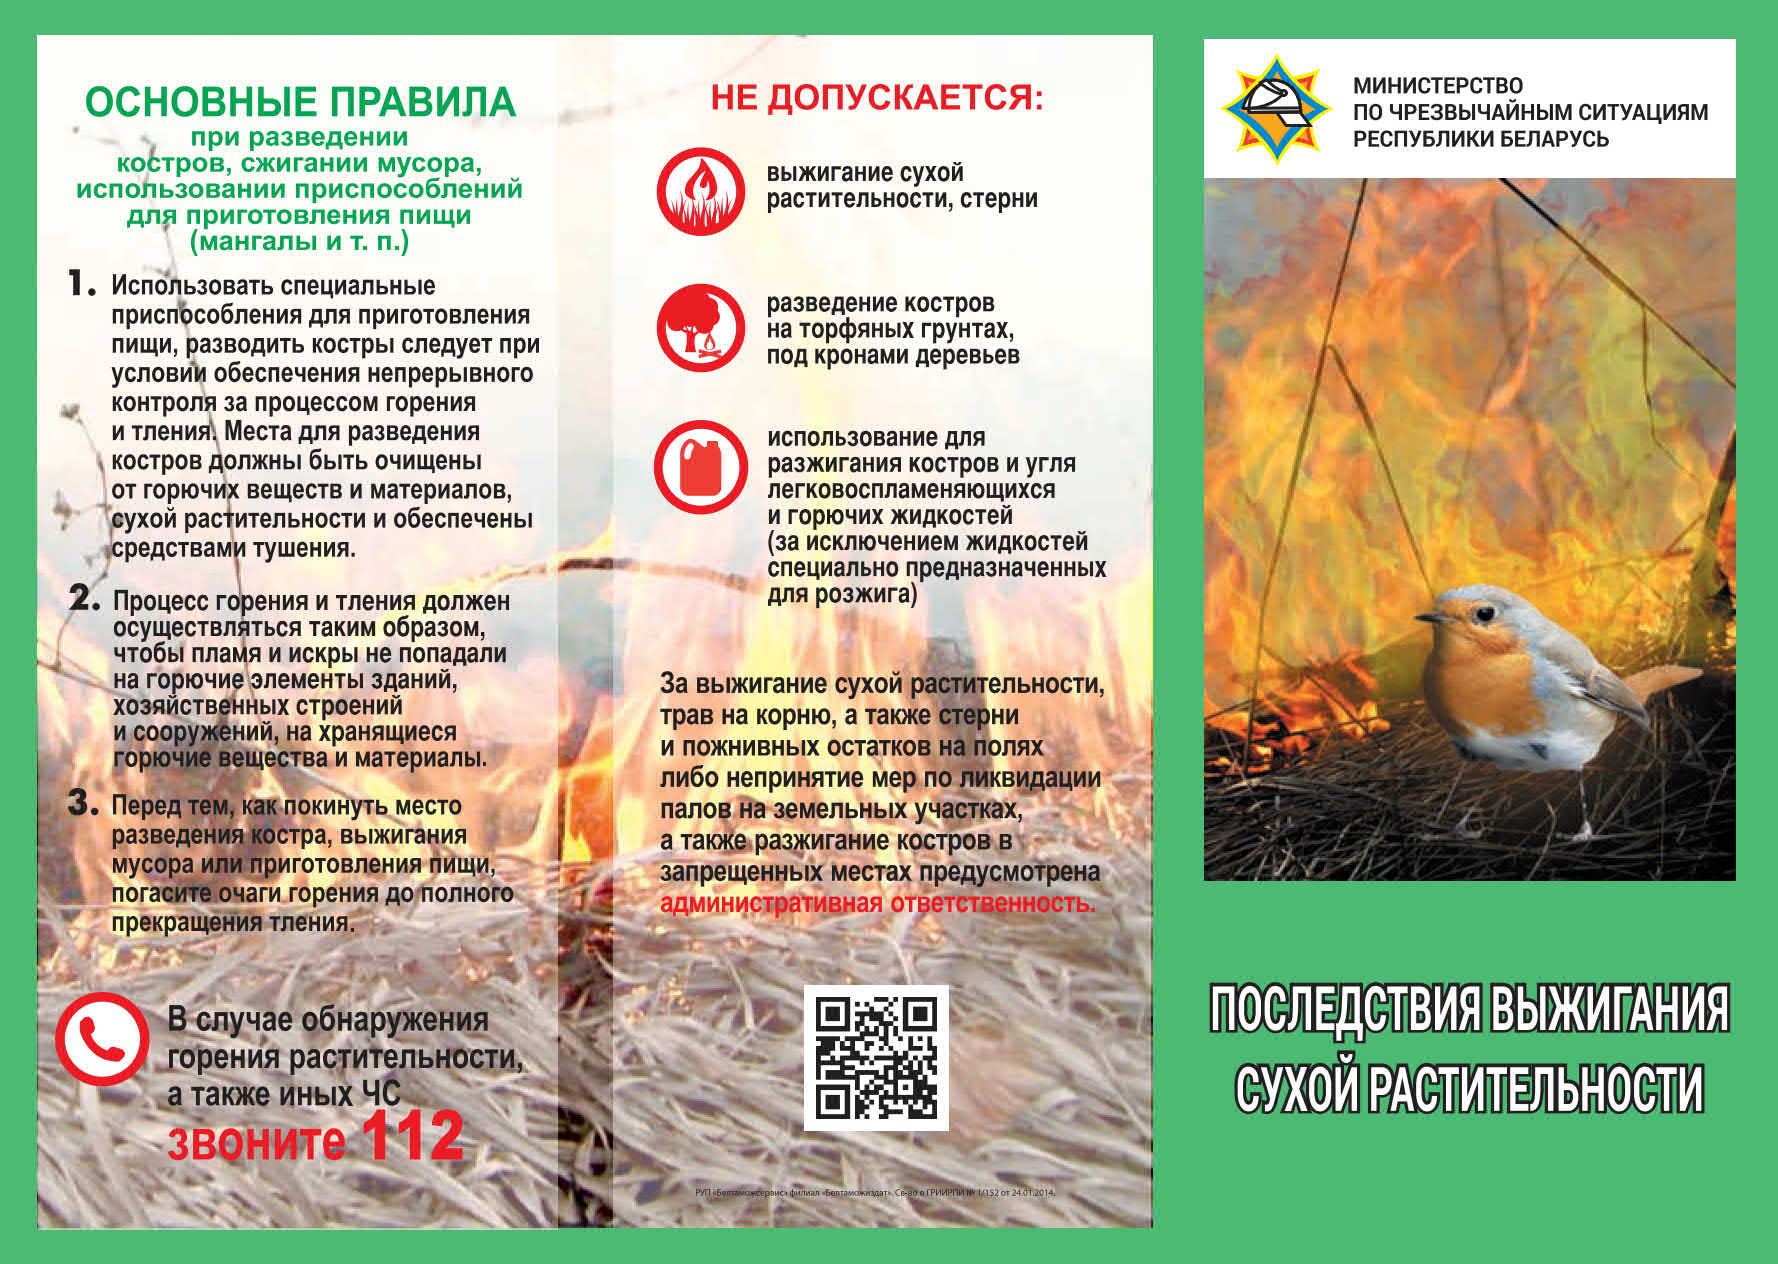 4. Буклет Последствия выжигания сухой растительности_1